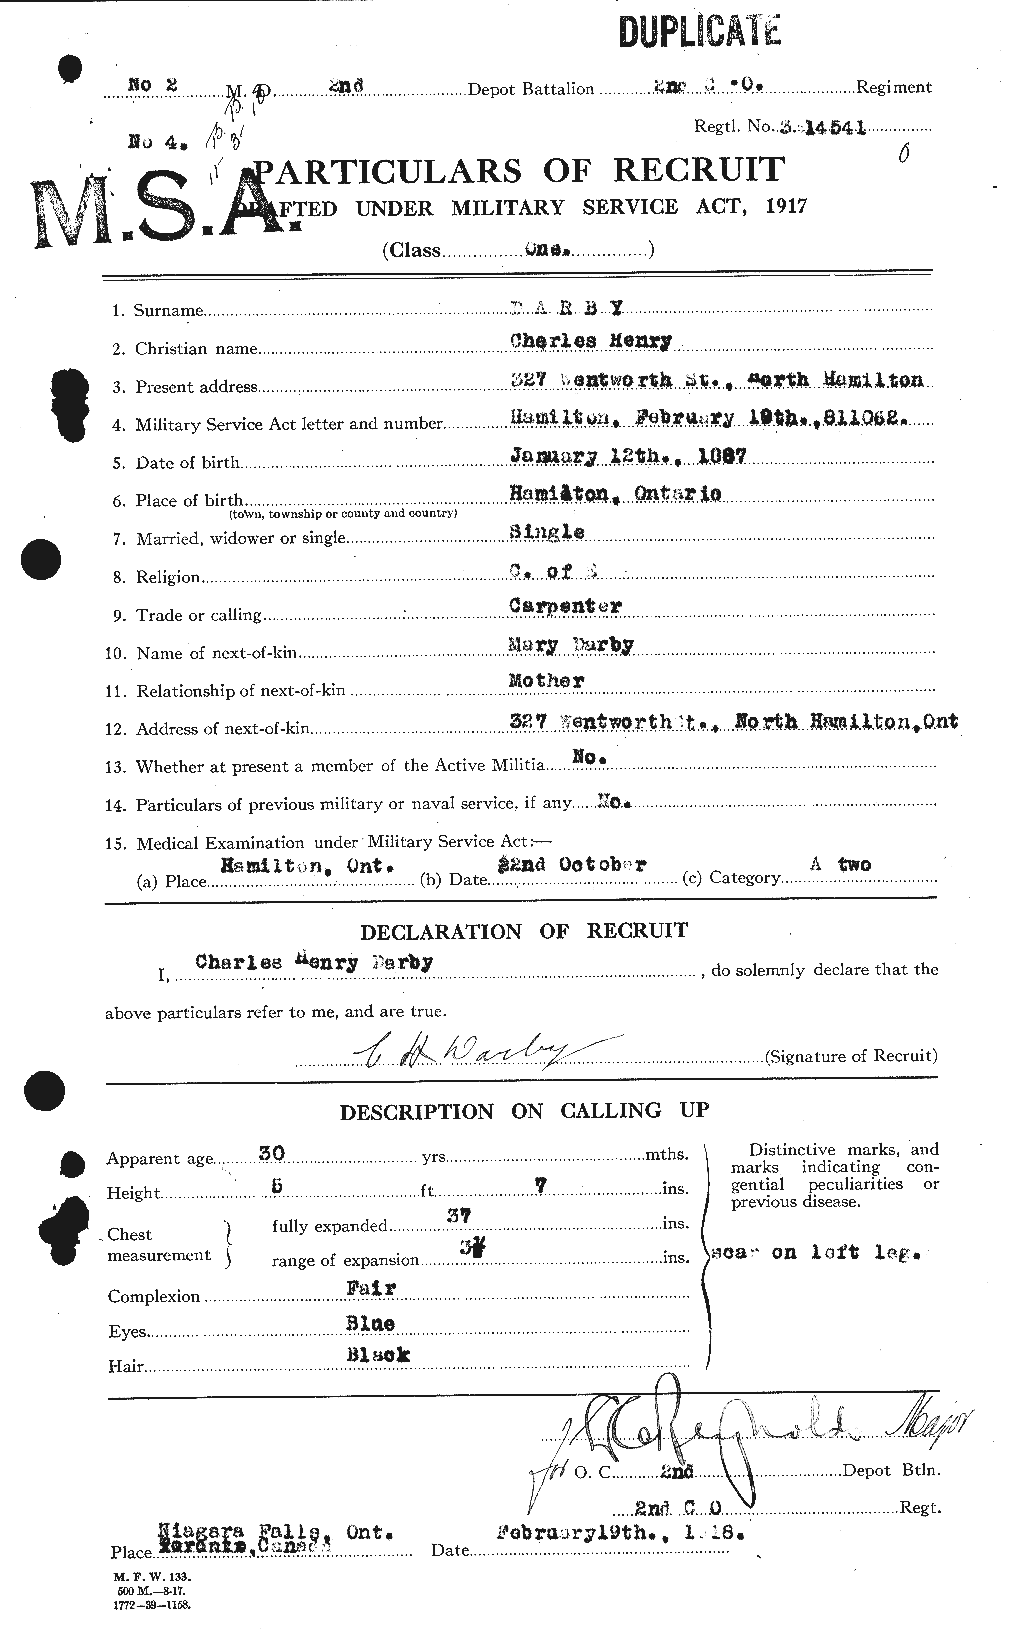 Dossiers du Personnel de la Première Guerre mondiale - CEC 279987a